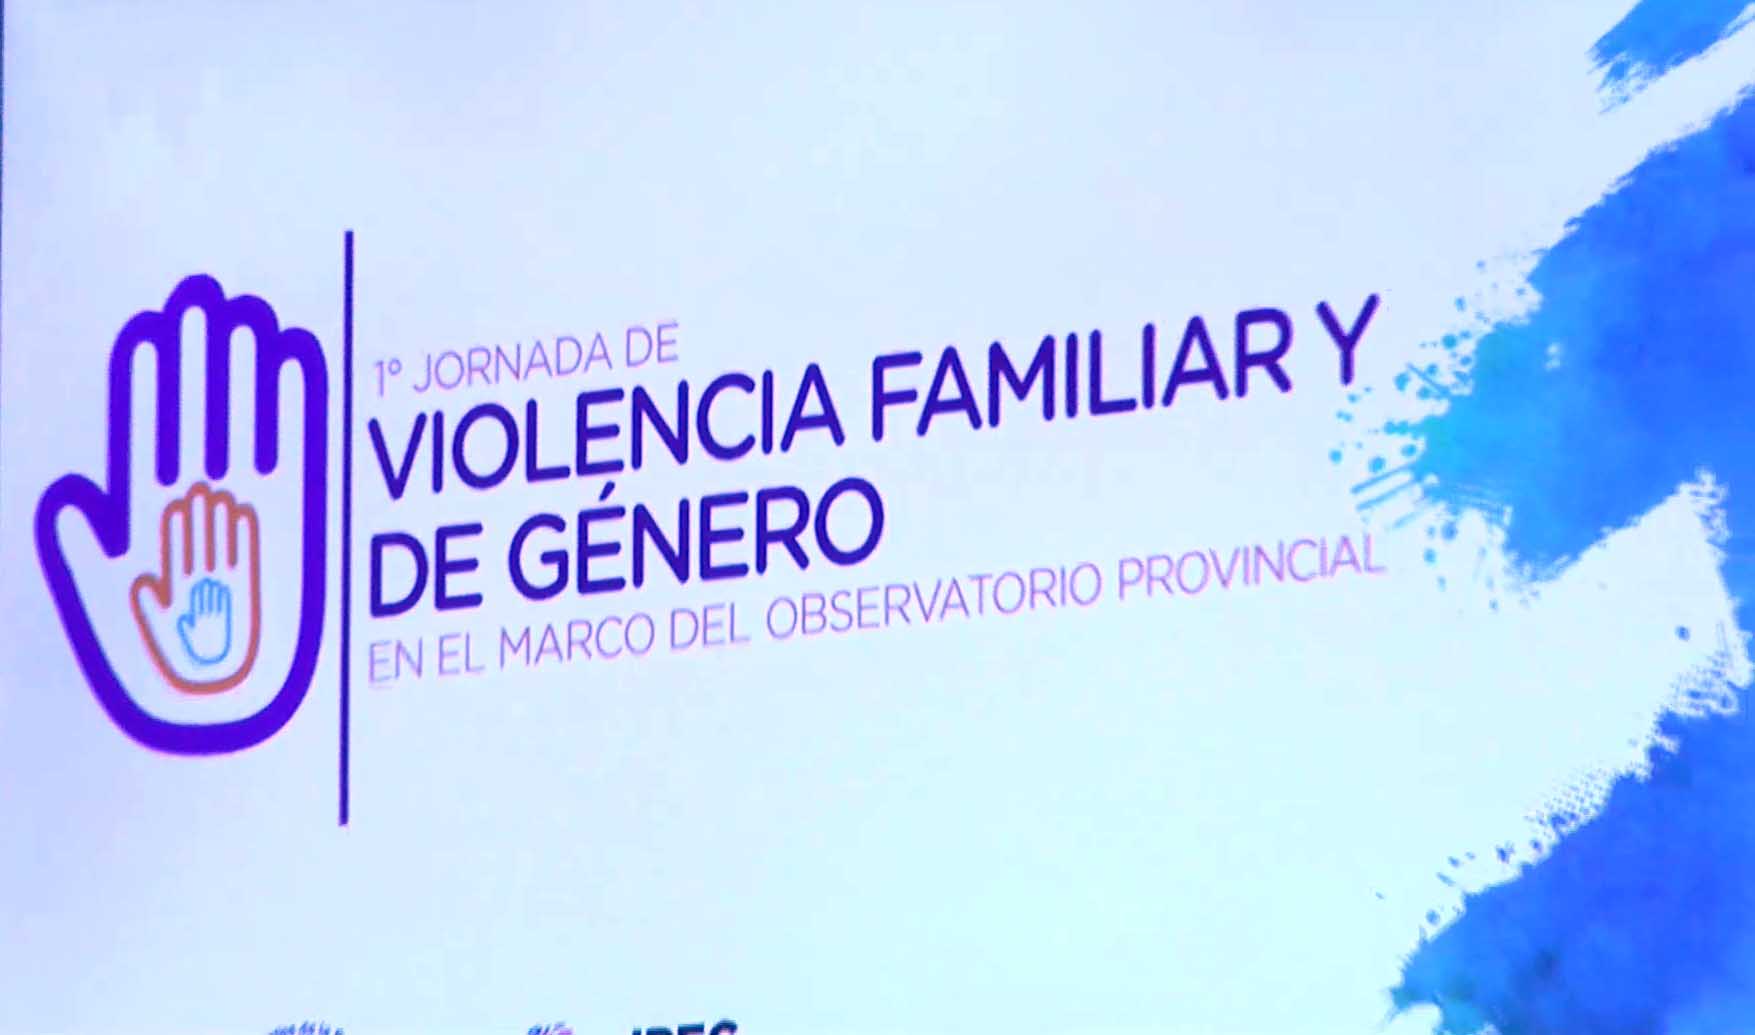 Primera jornada sobre violencia familiar y de género del observatorio provincial